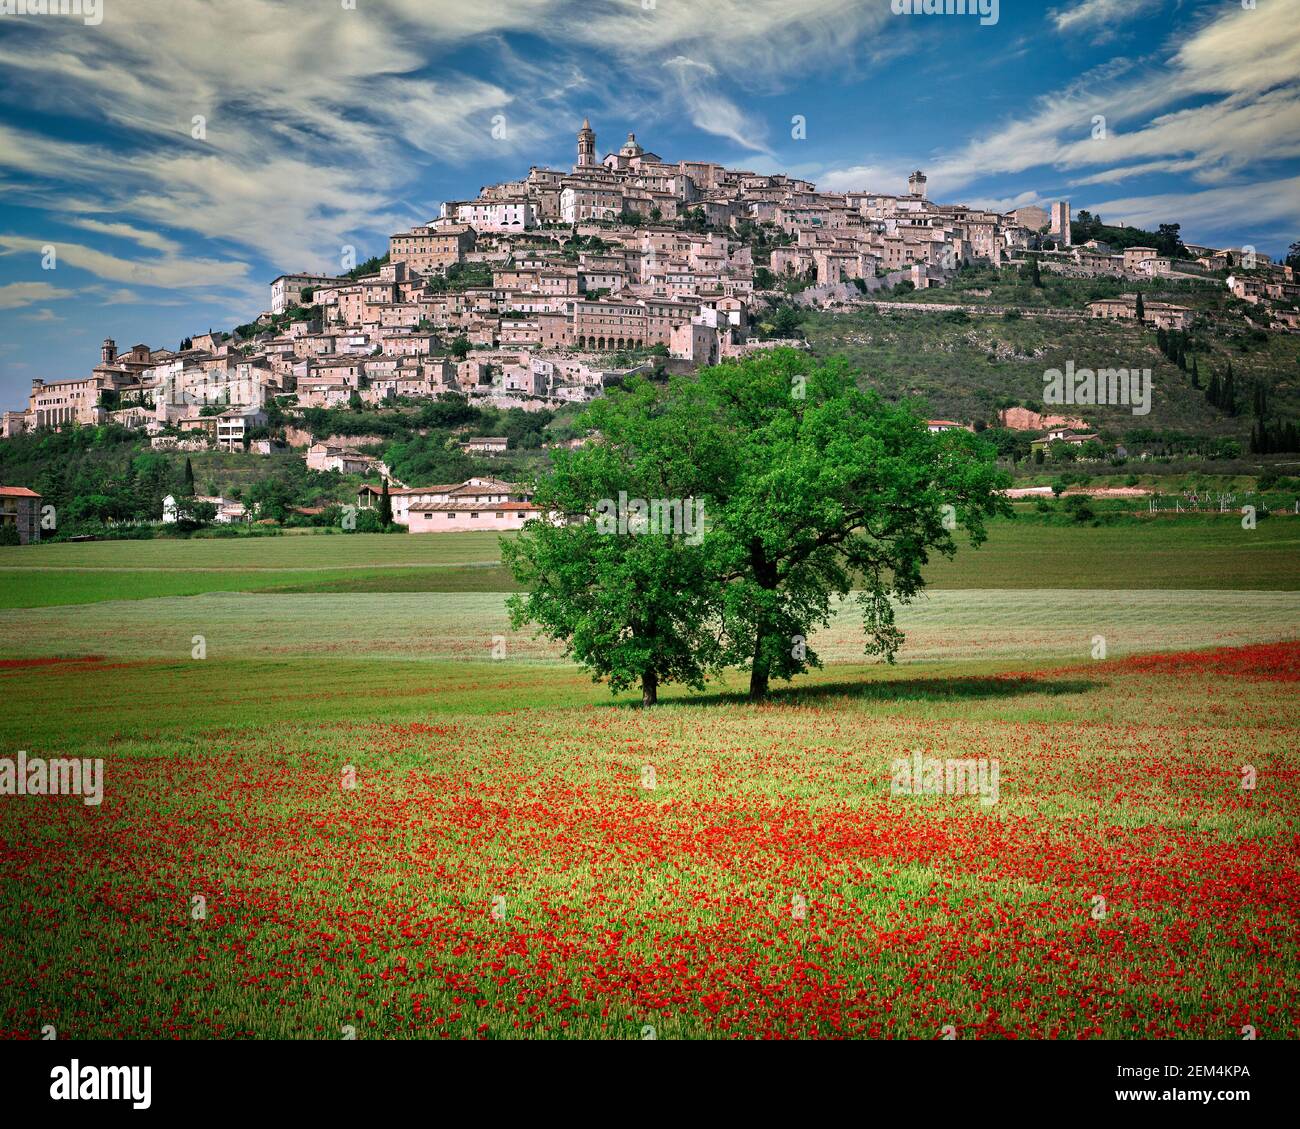 IT - UMBRIA: La pittoresca città di Trevi (in latino: Trebiae) Foto Stock